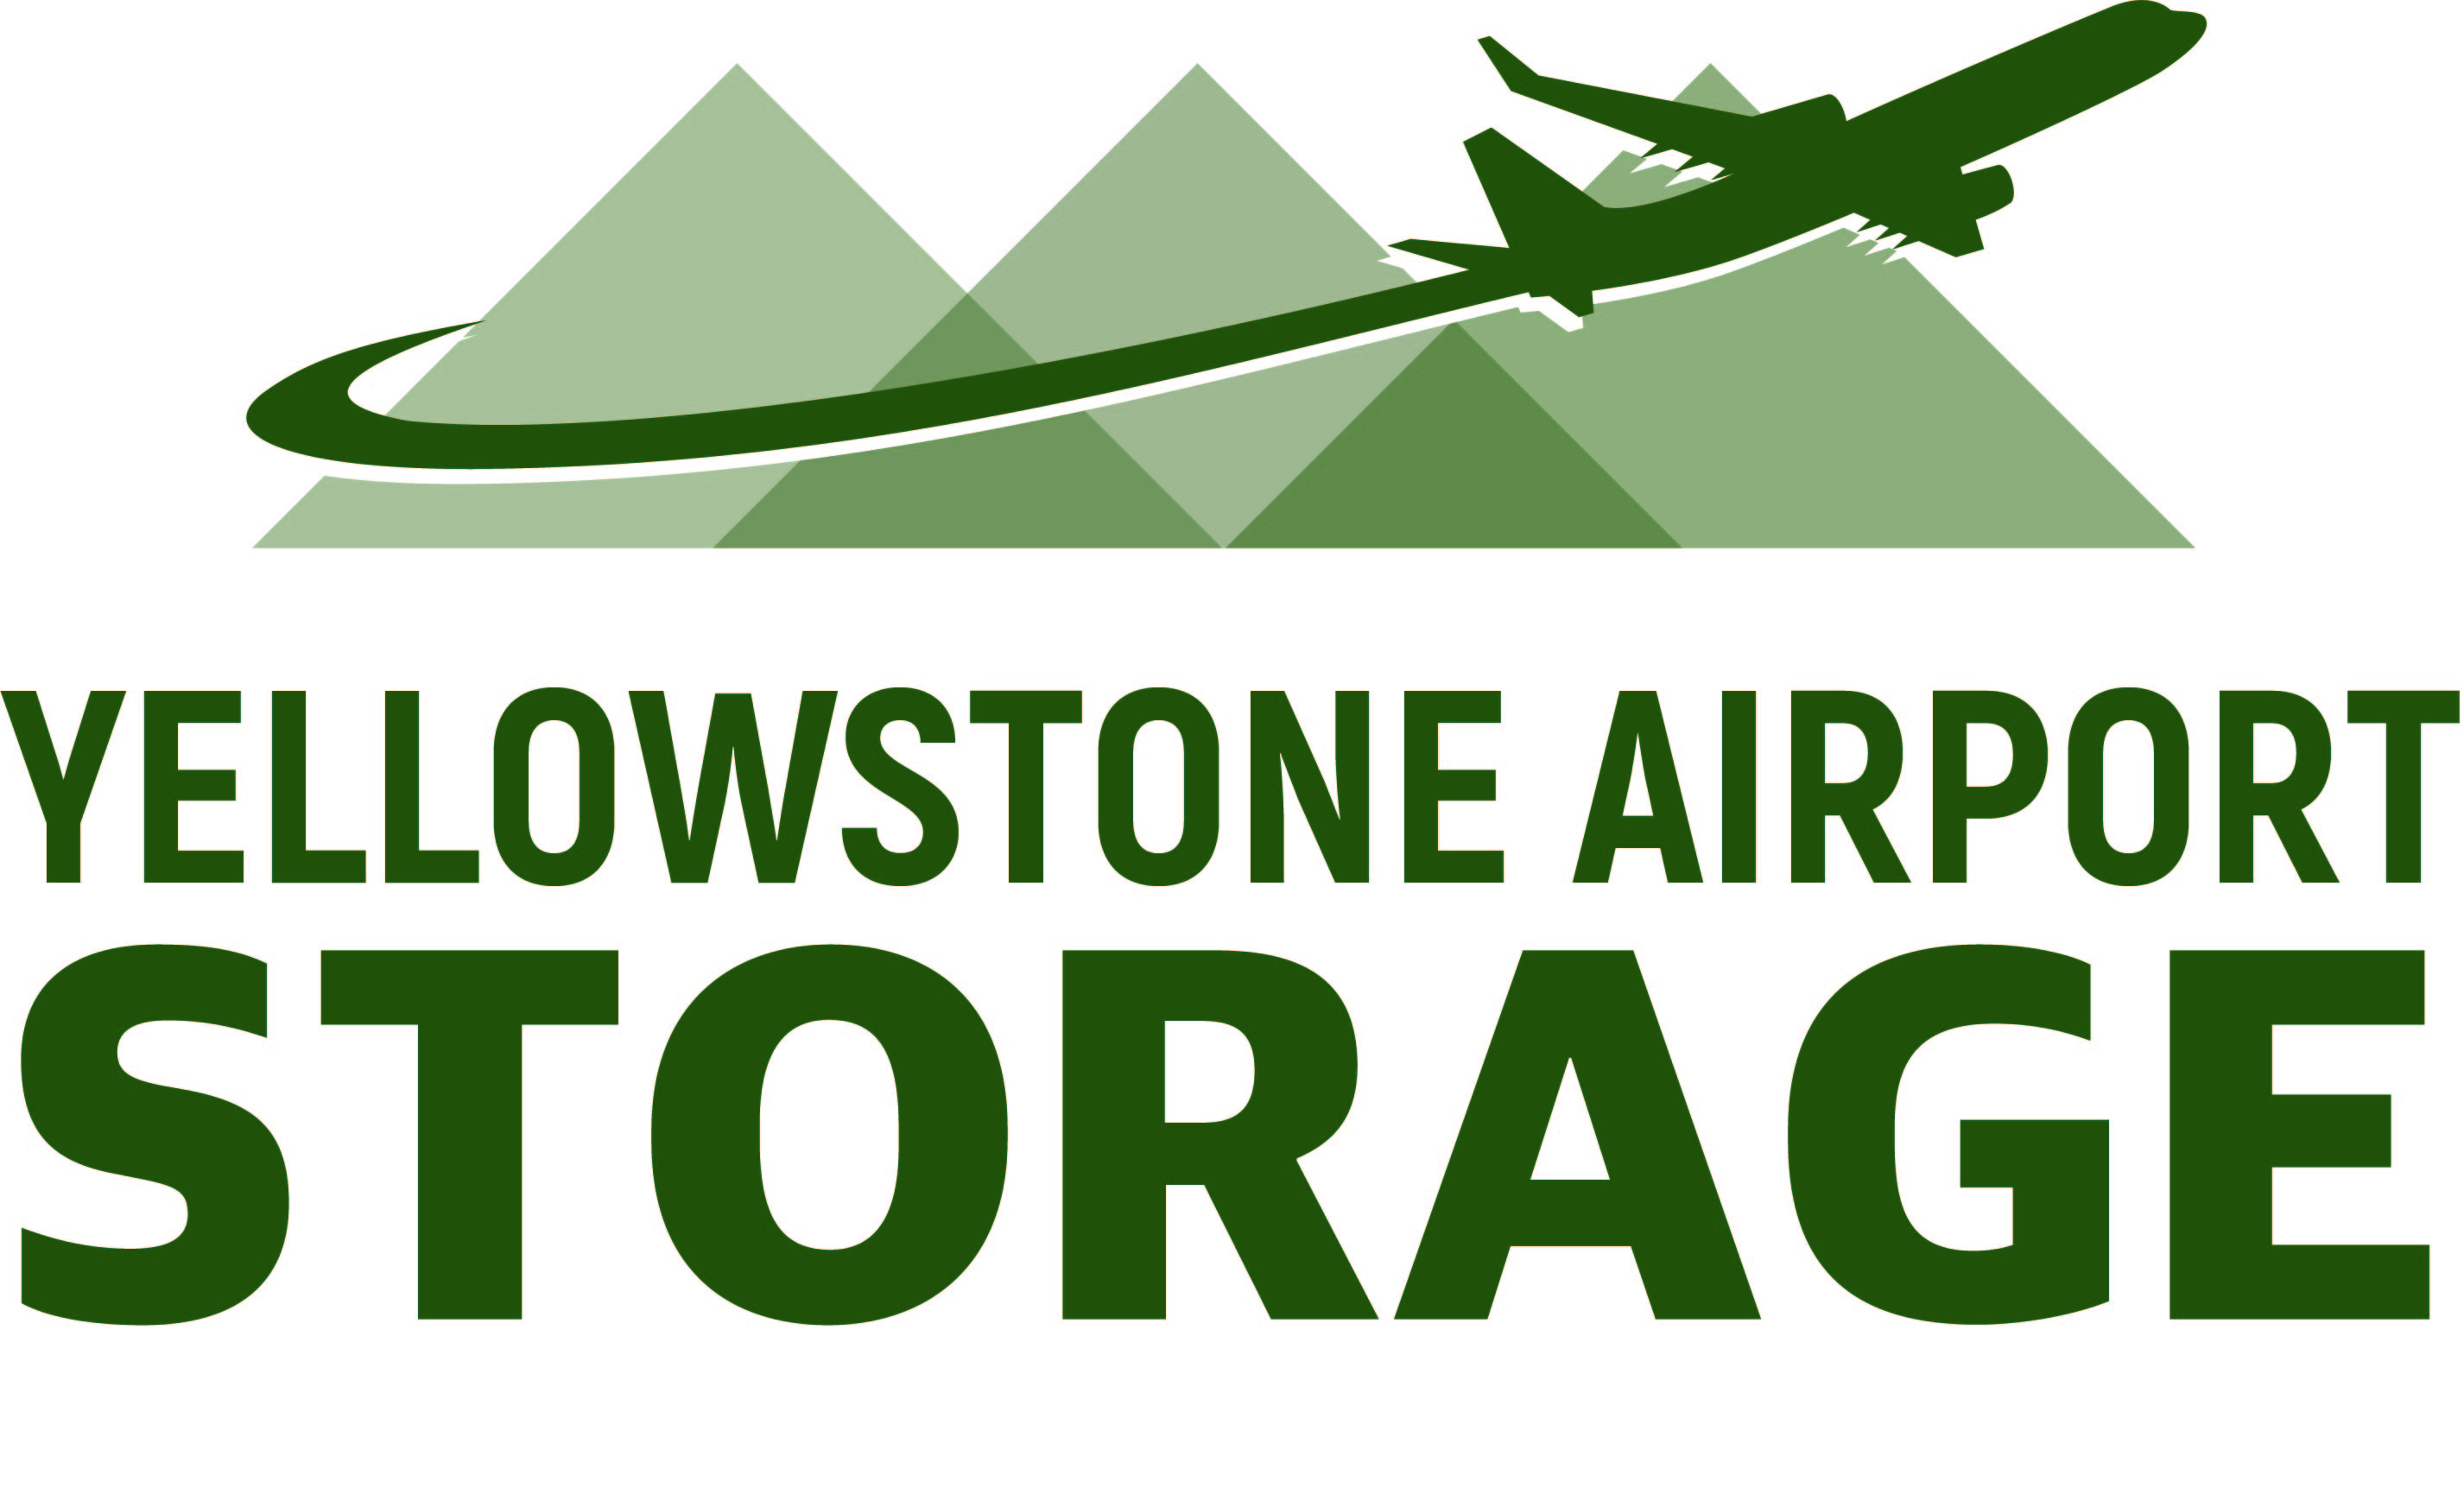 Yellowstone Airport Storage